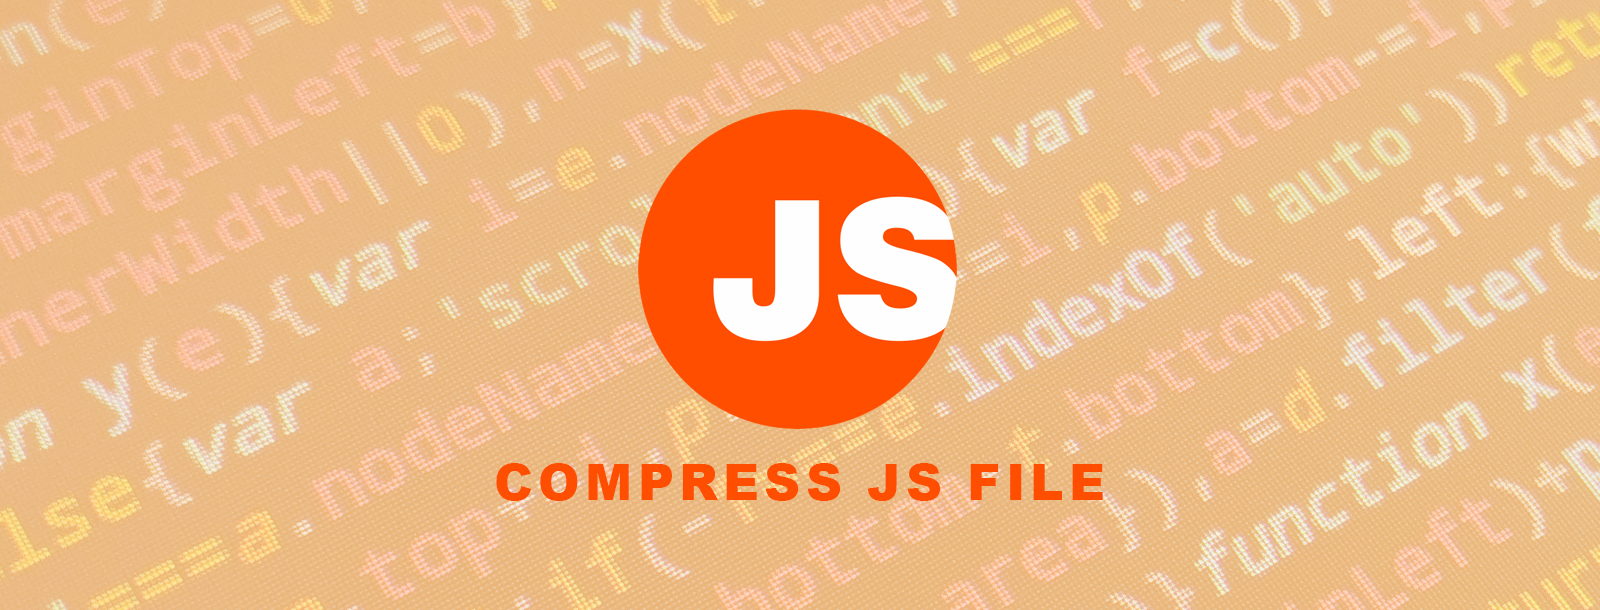 JS compression